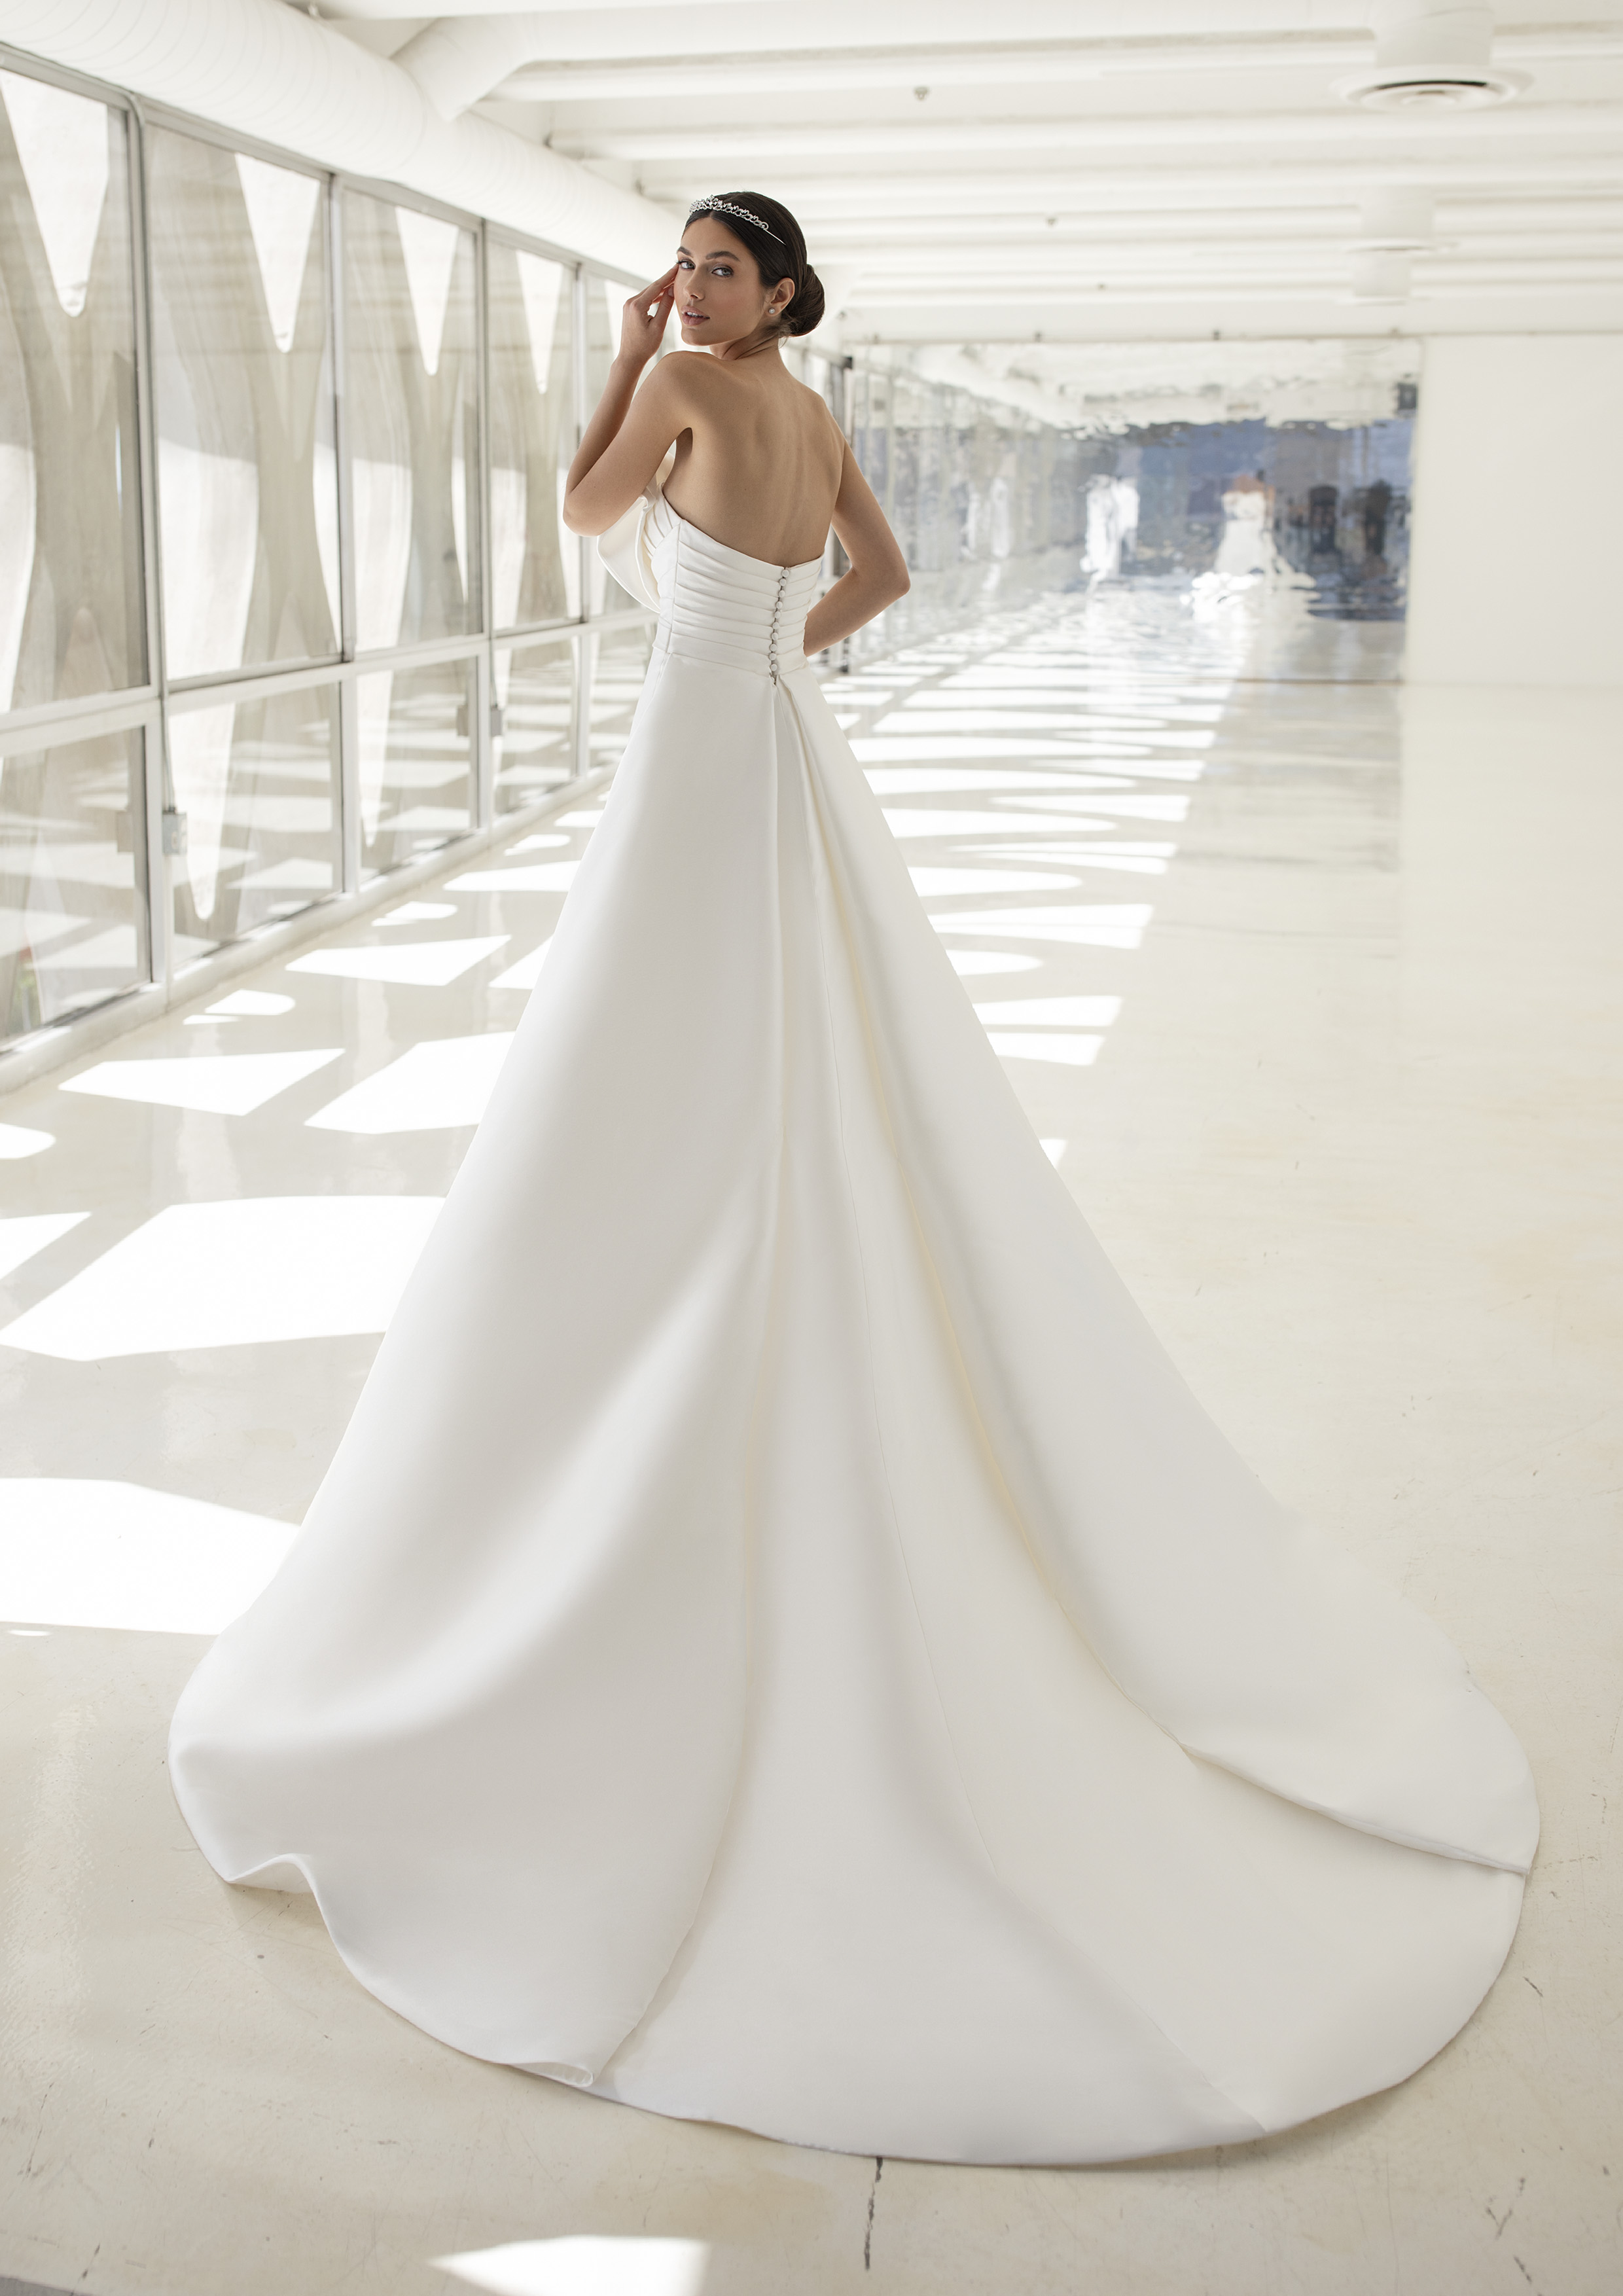 Vestido de noiva modelo Malone da coleção Pronovias 2021 Cruise Collection